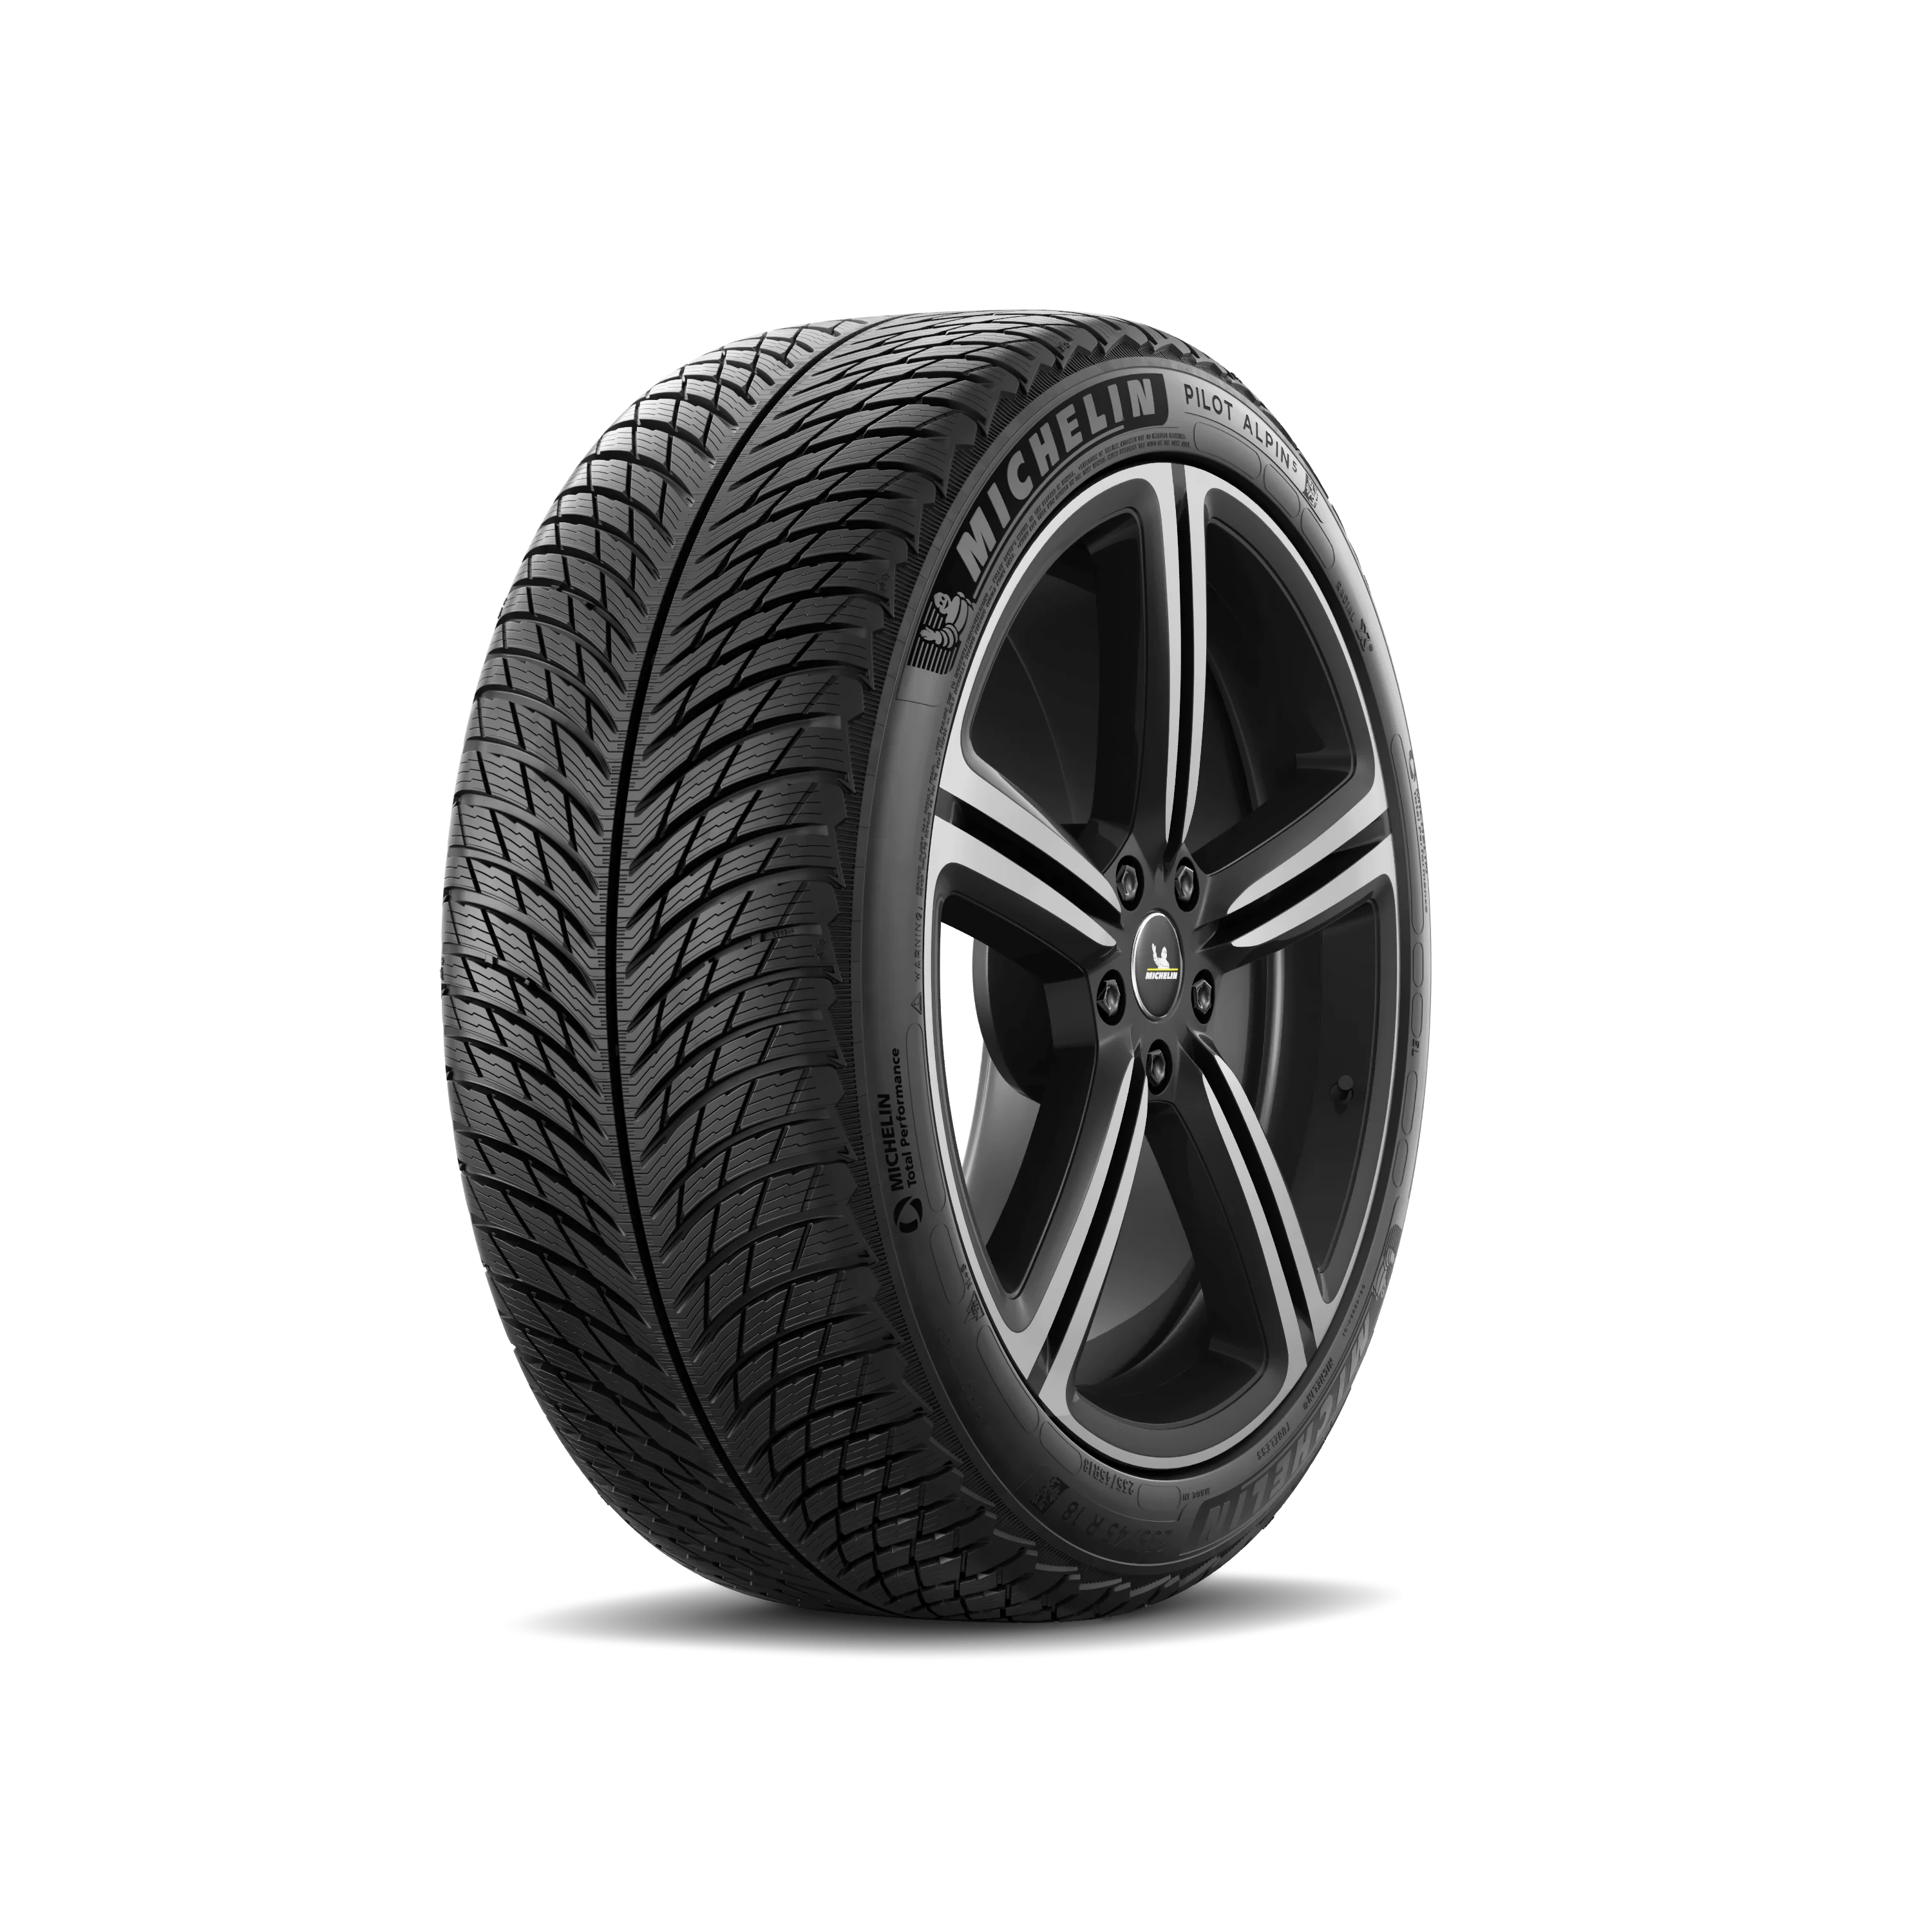 Michelin Michelin 285/45 R21 113V Pilotalpin5suv XL pneumatici nuovi Invernale 